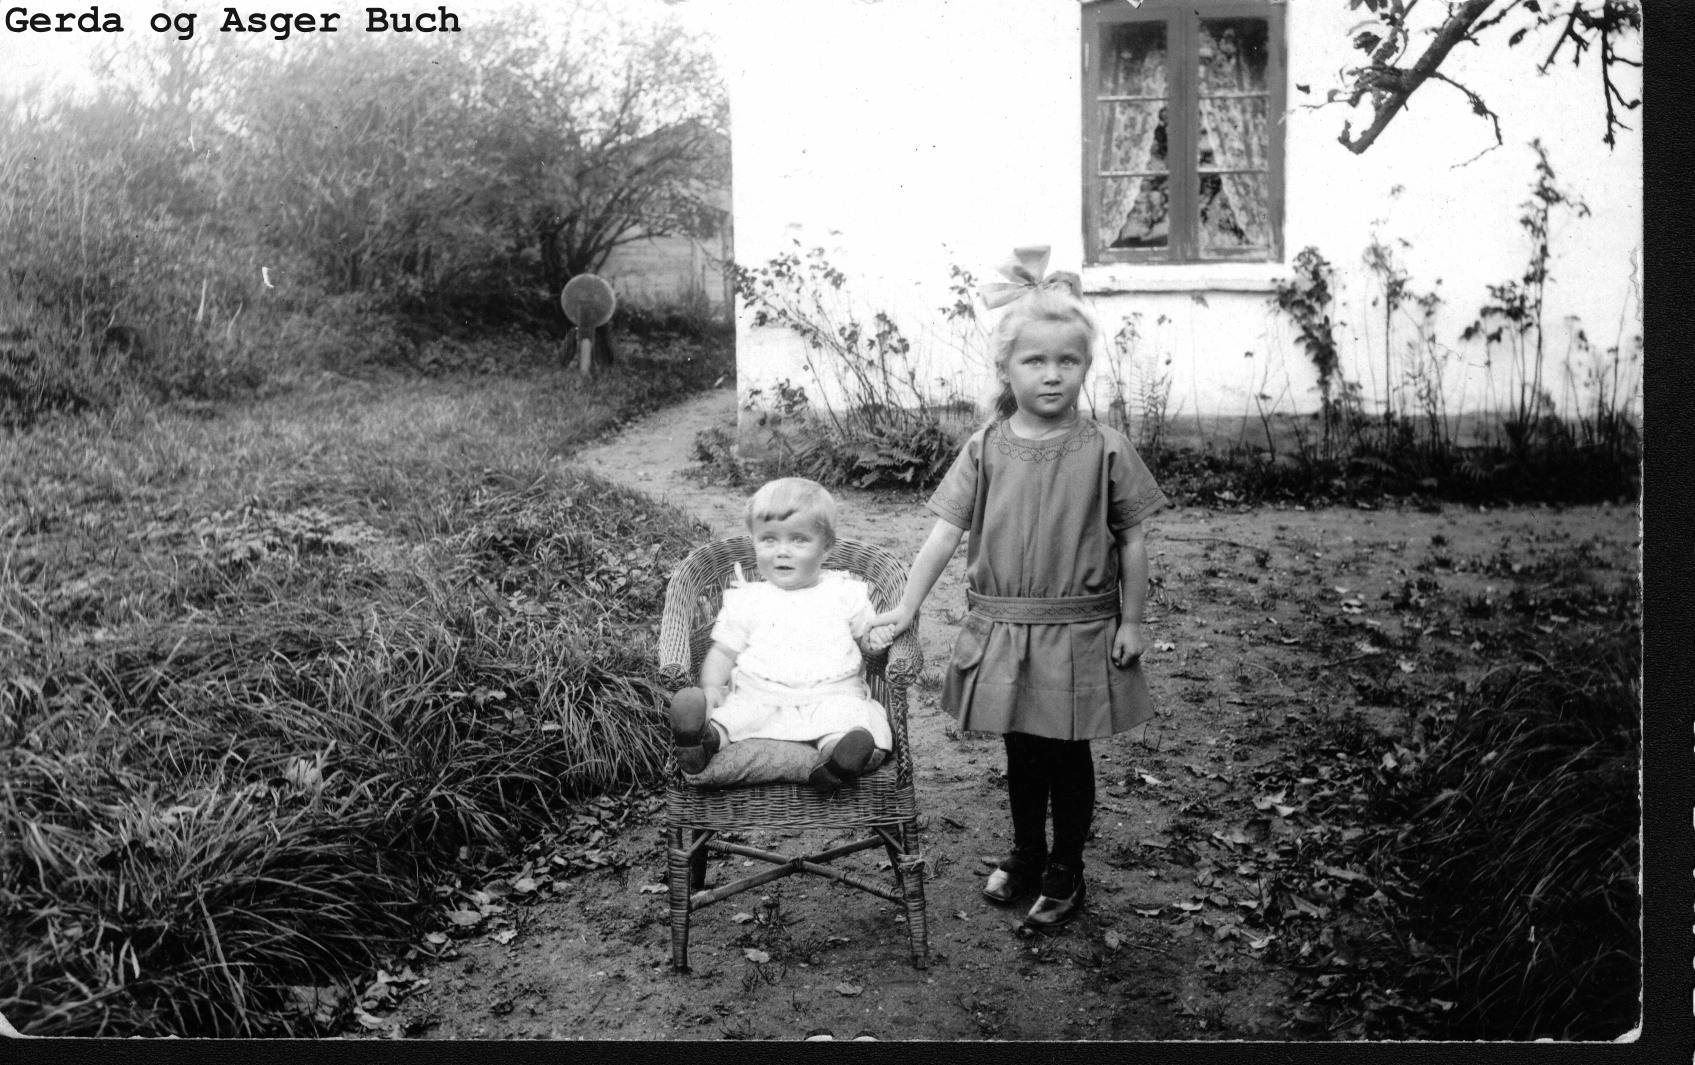 Gerda og Asger Buch